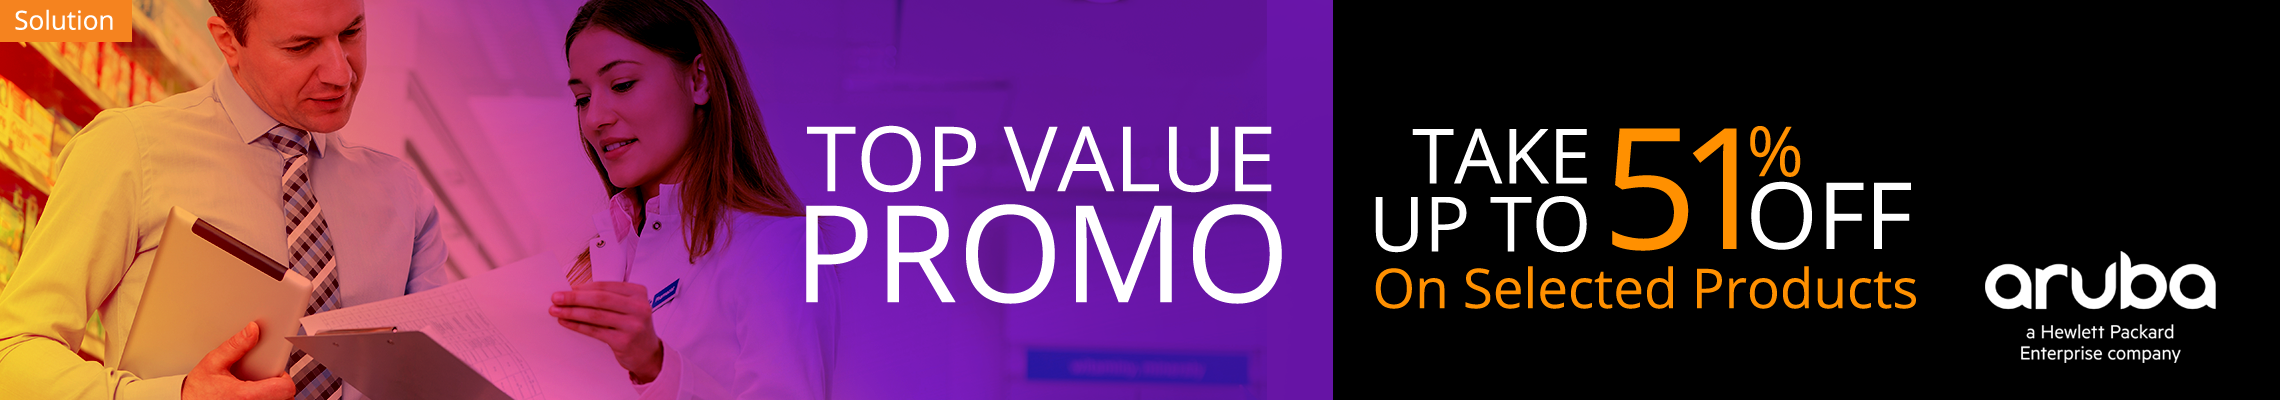 Aruba Top Value Promo